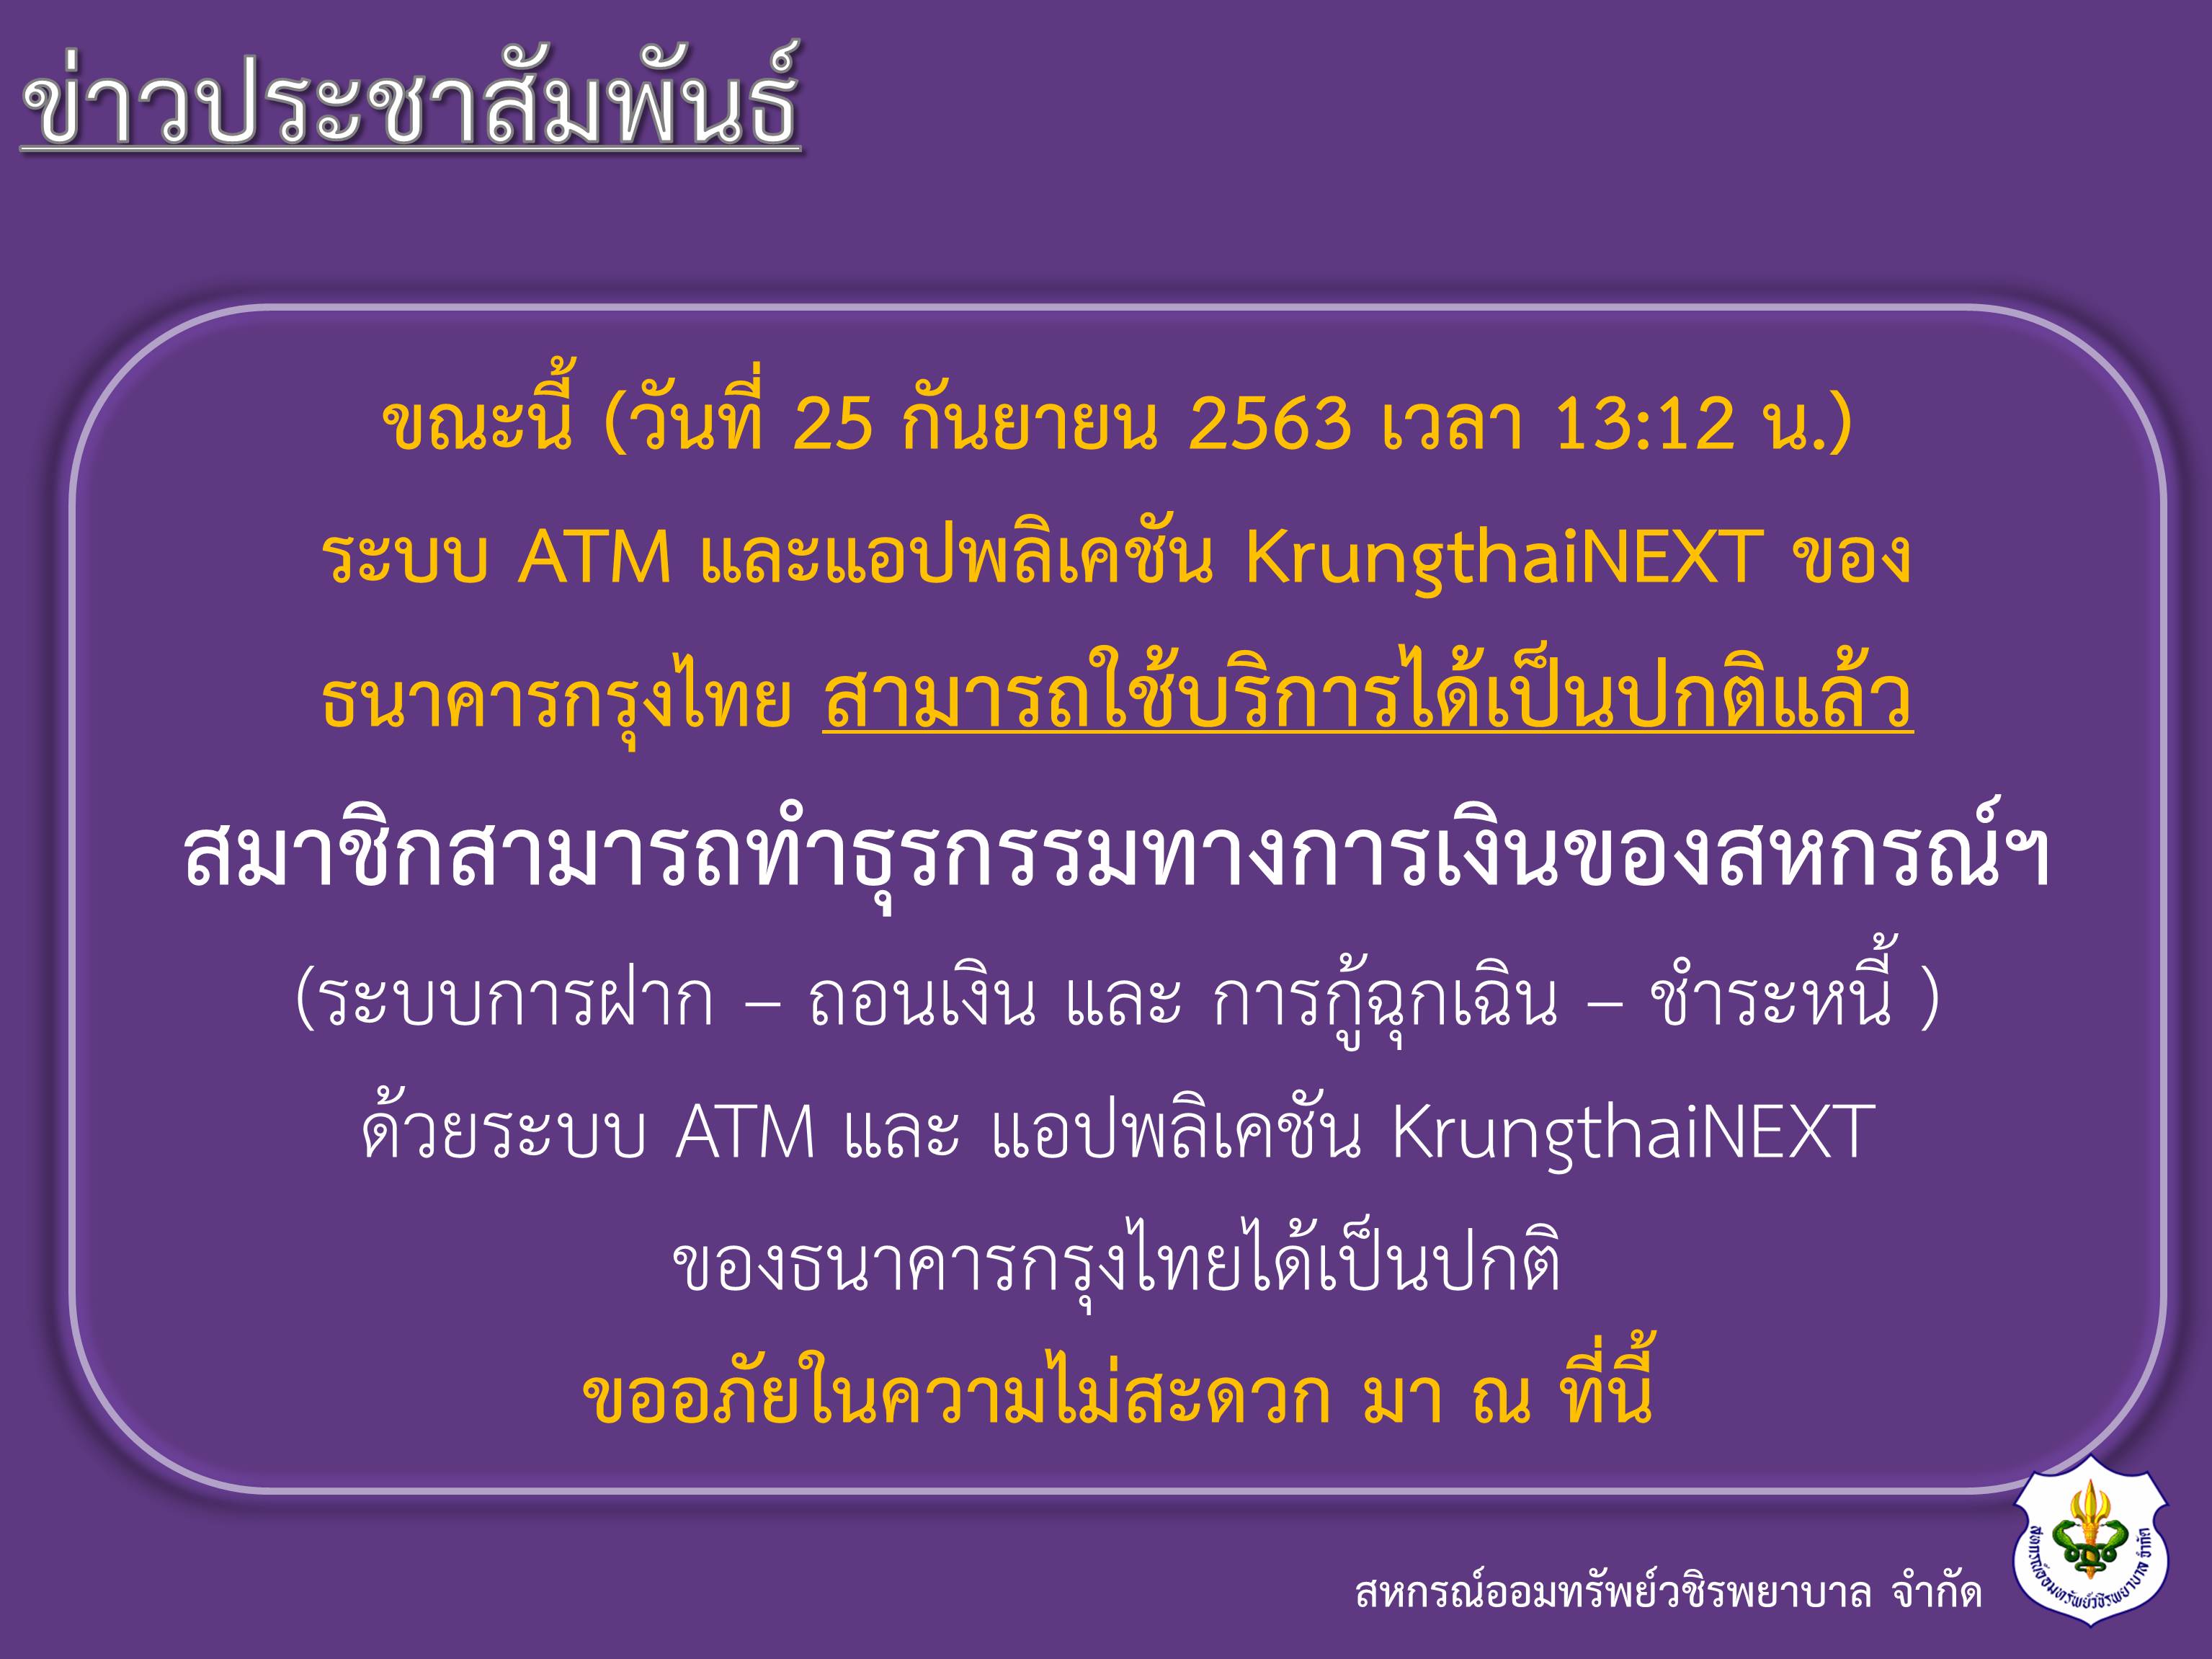 แจ้งการใช้งานระบบ ATM และแอปพลิเคชัน KrungthaiNEXT ของธนาคารกรุงไทย